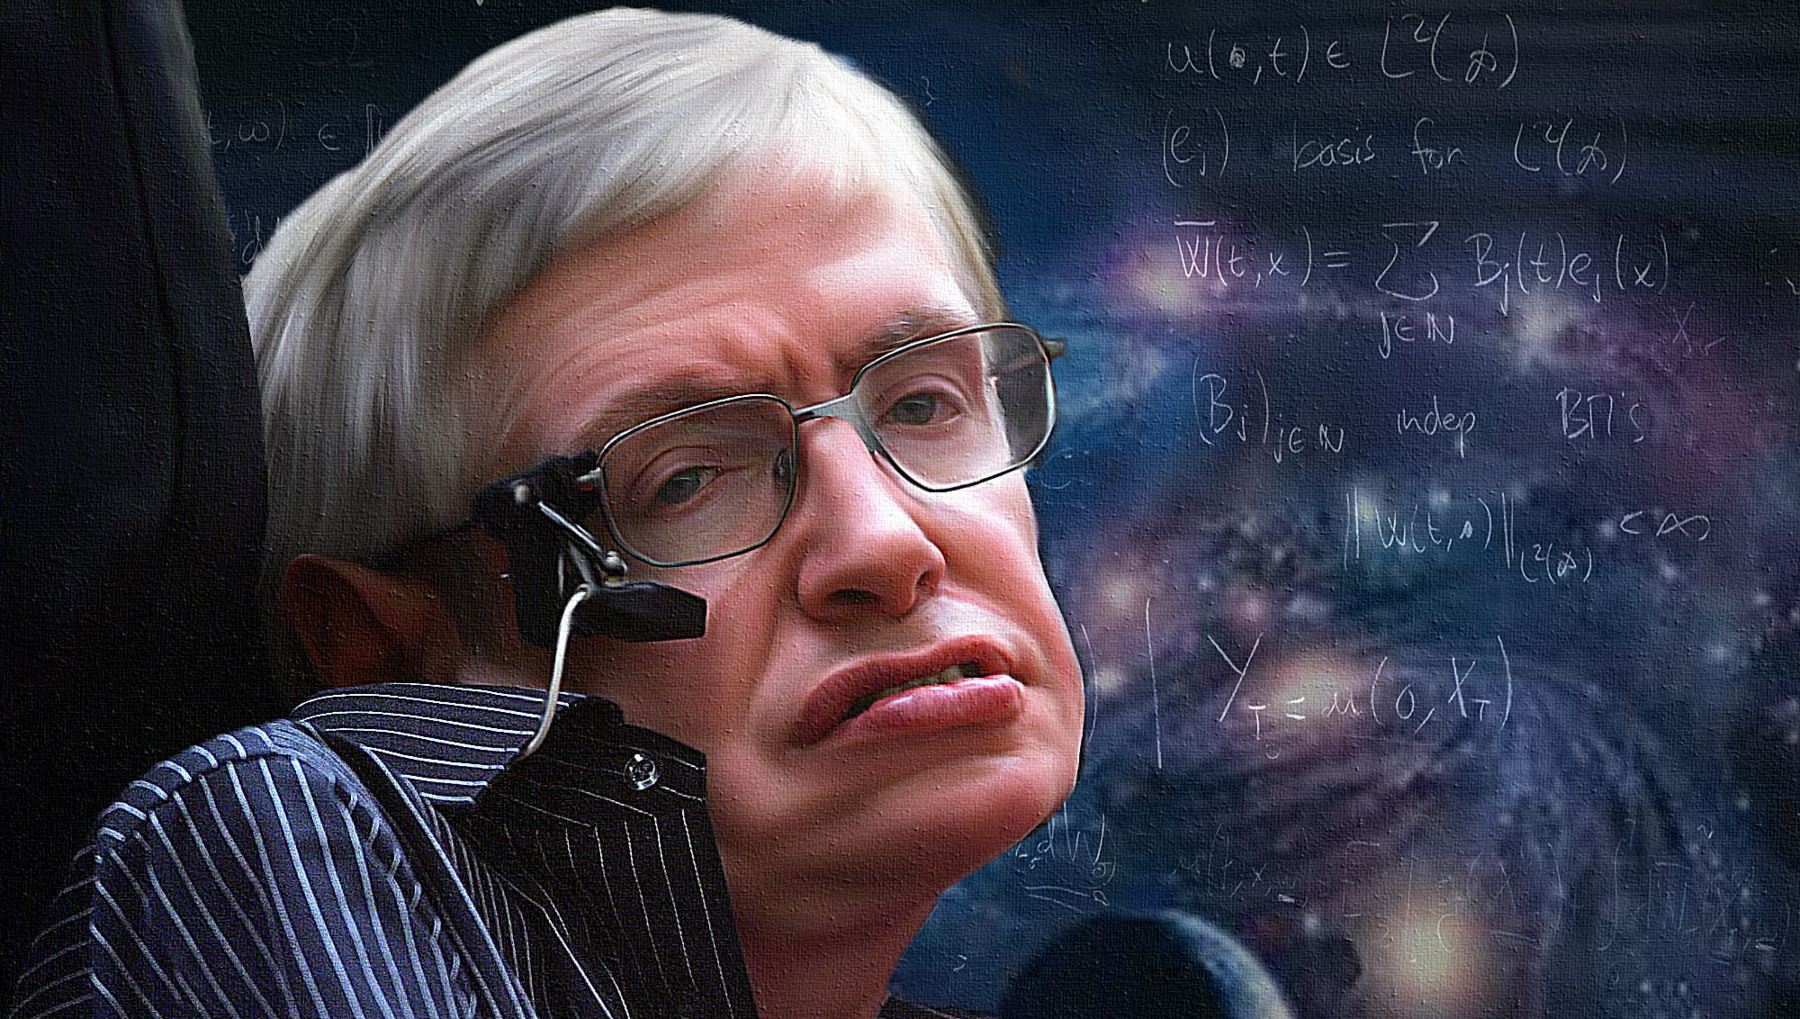 Libros de Stephen Hawking